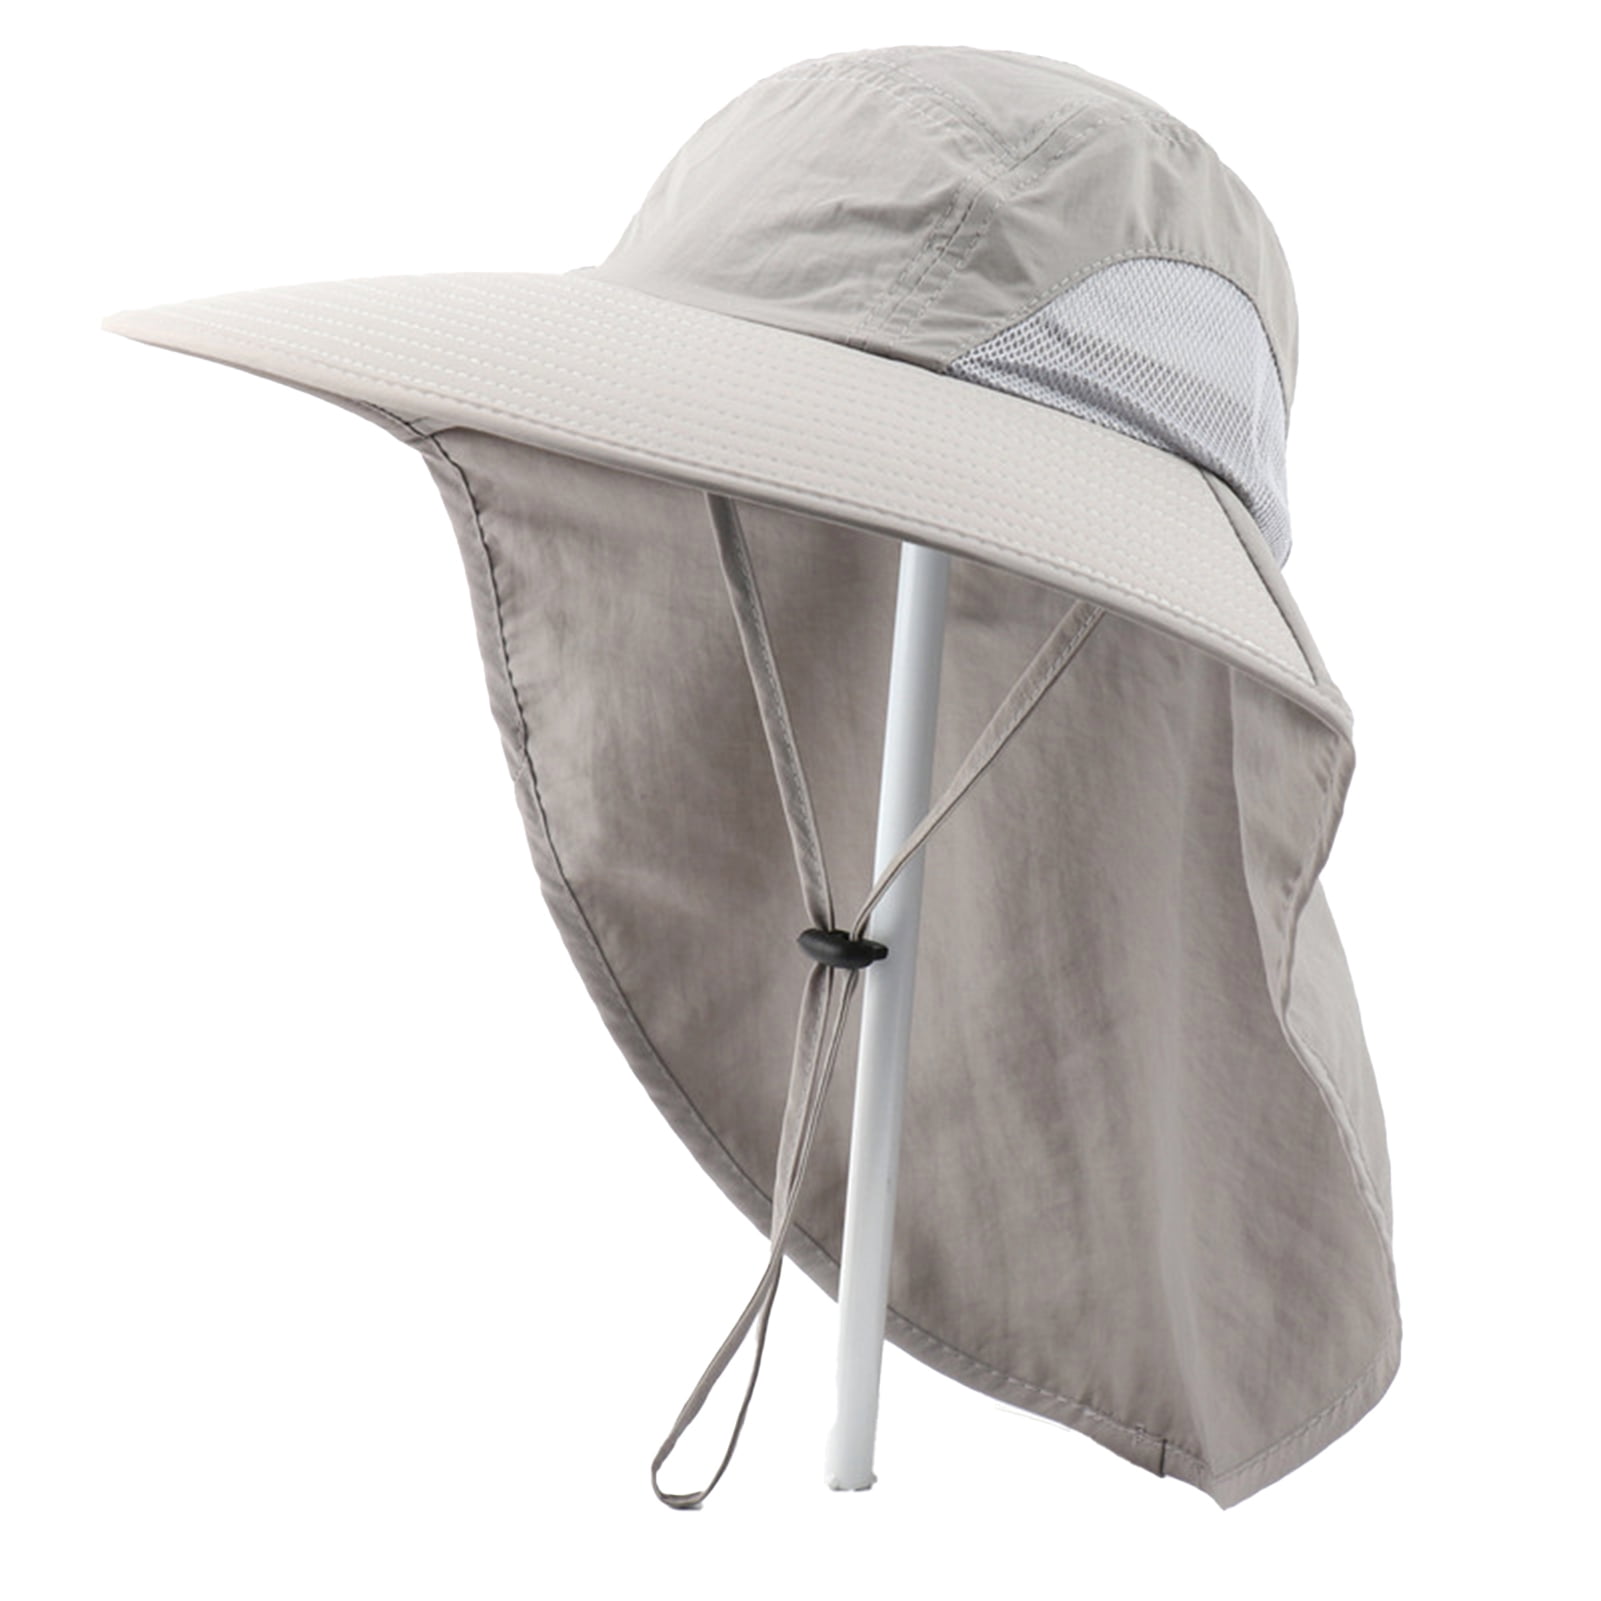 Generic Fishing Hats Men Sun Protection Waterproof With Windproof Strap  Beige @ Best Price Online